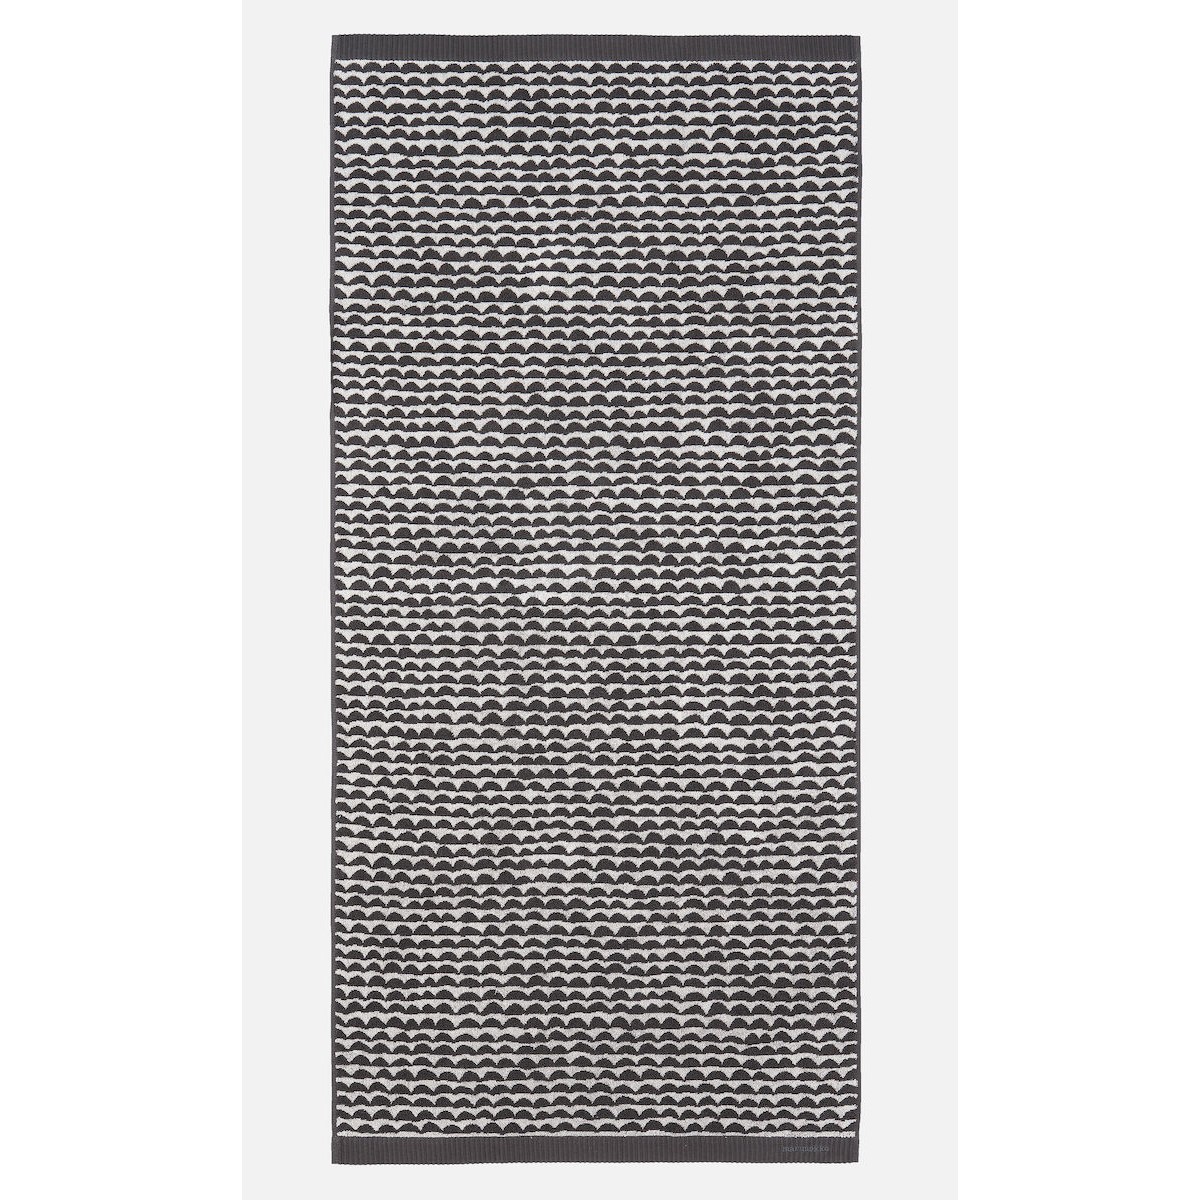 70x150cm - Papajo 190 - Marimekko bath towel